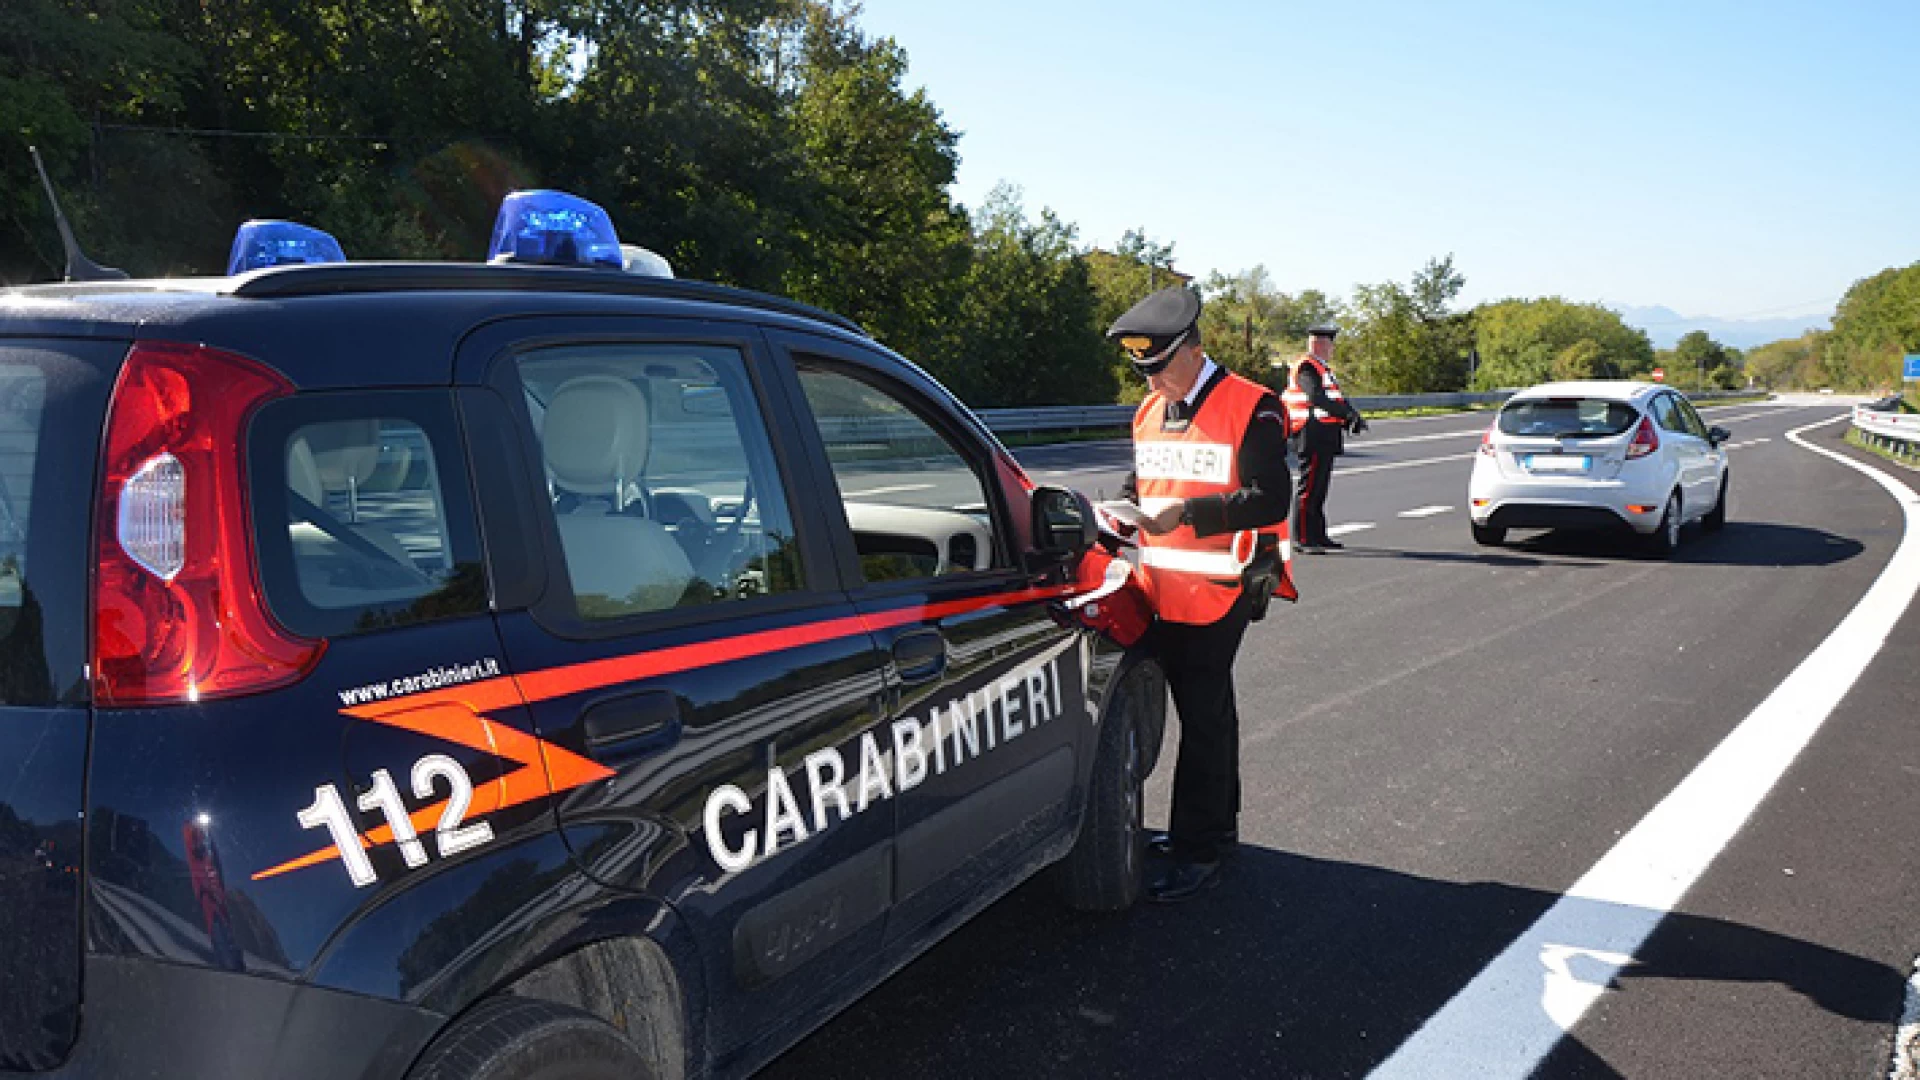 Operazione in atto da parte dei Carabinieri sui territori di Abruzzo e Molise. Si starebbe dando la caccia a banda di ladri di appartamenti.